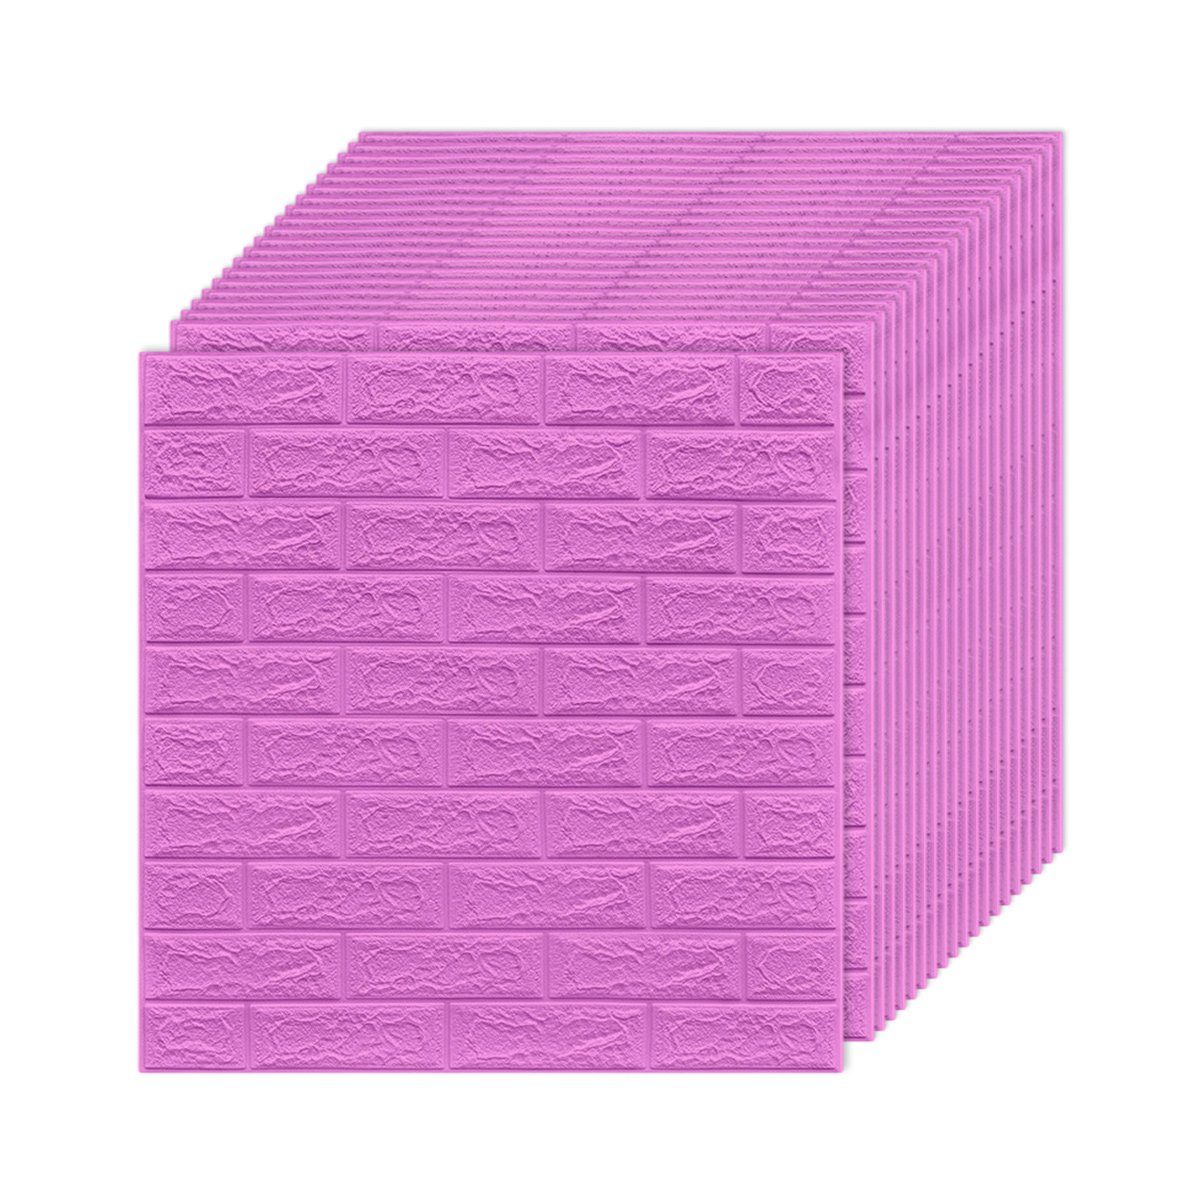 für Violett 3D Jormftte Küche Selbstklebend,Wandtattoo Wandtattoo Wanddeko Ziegelstein Wandpaneele